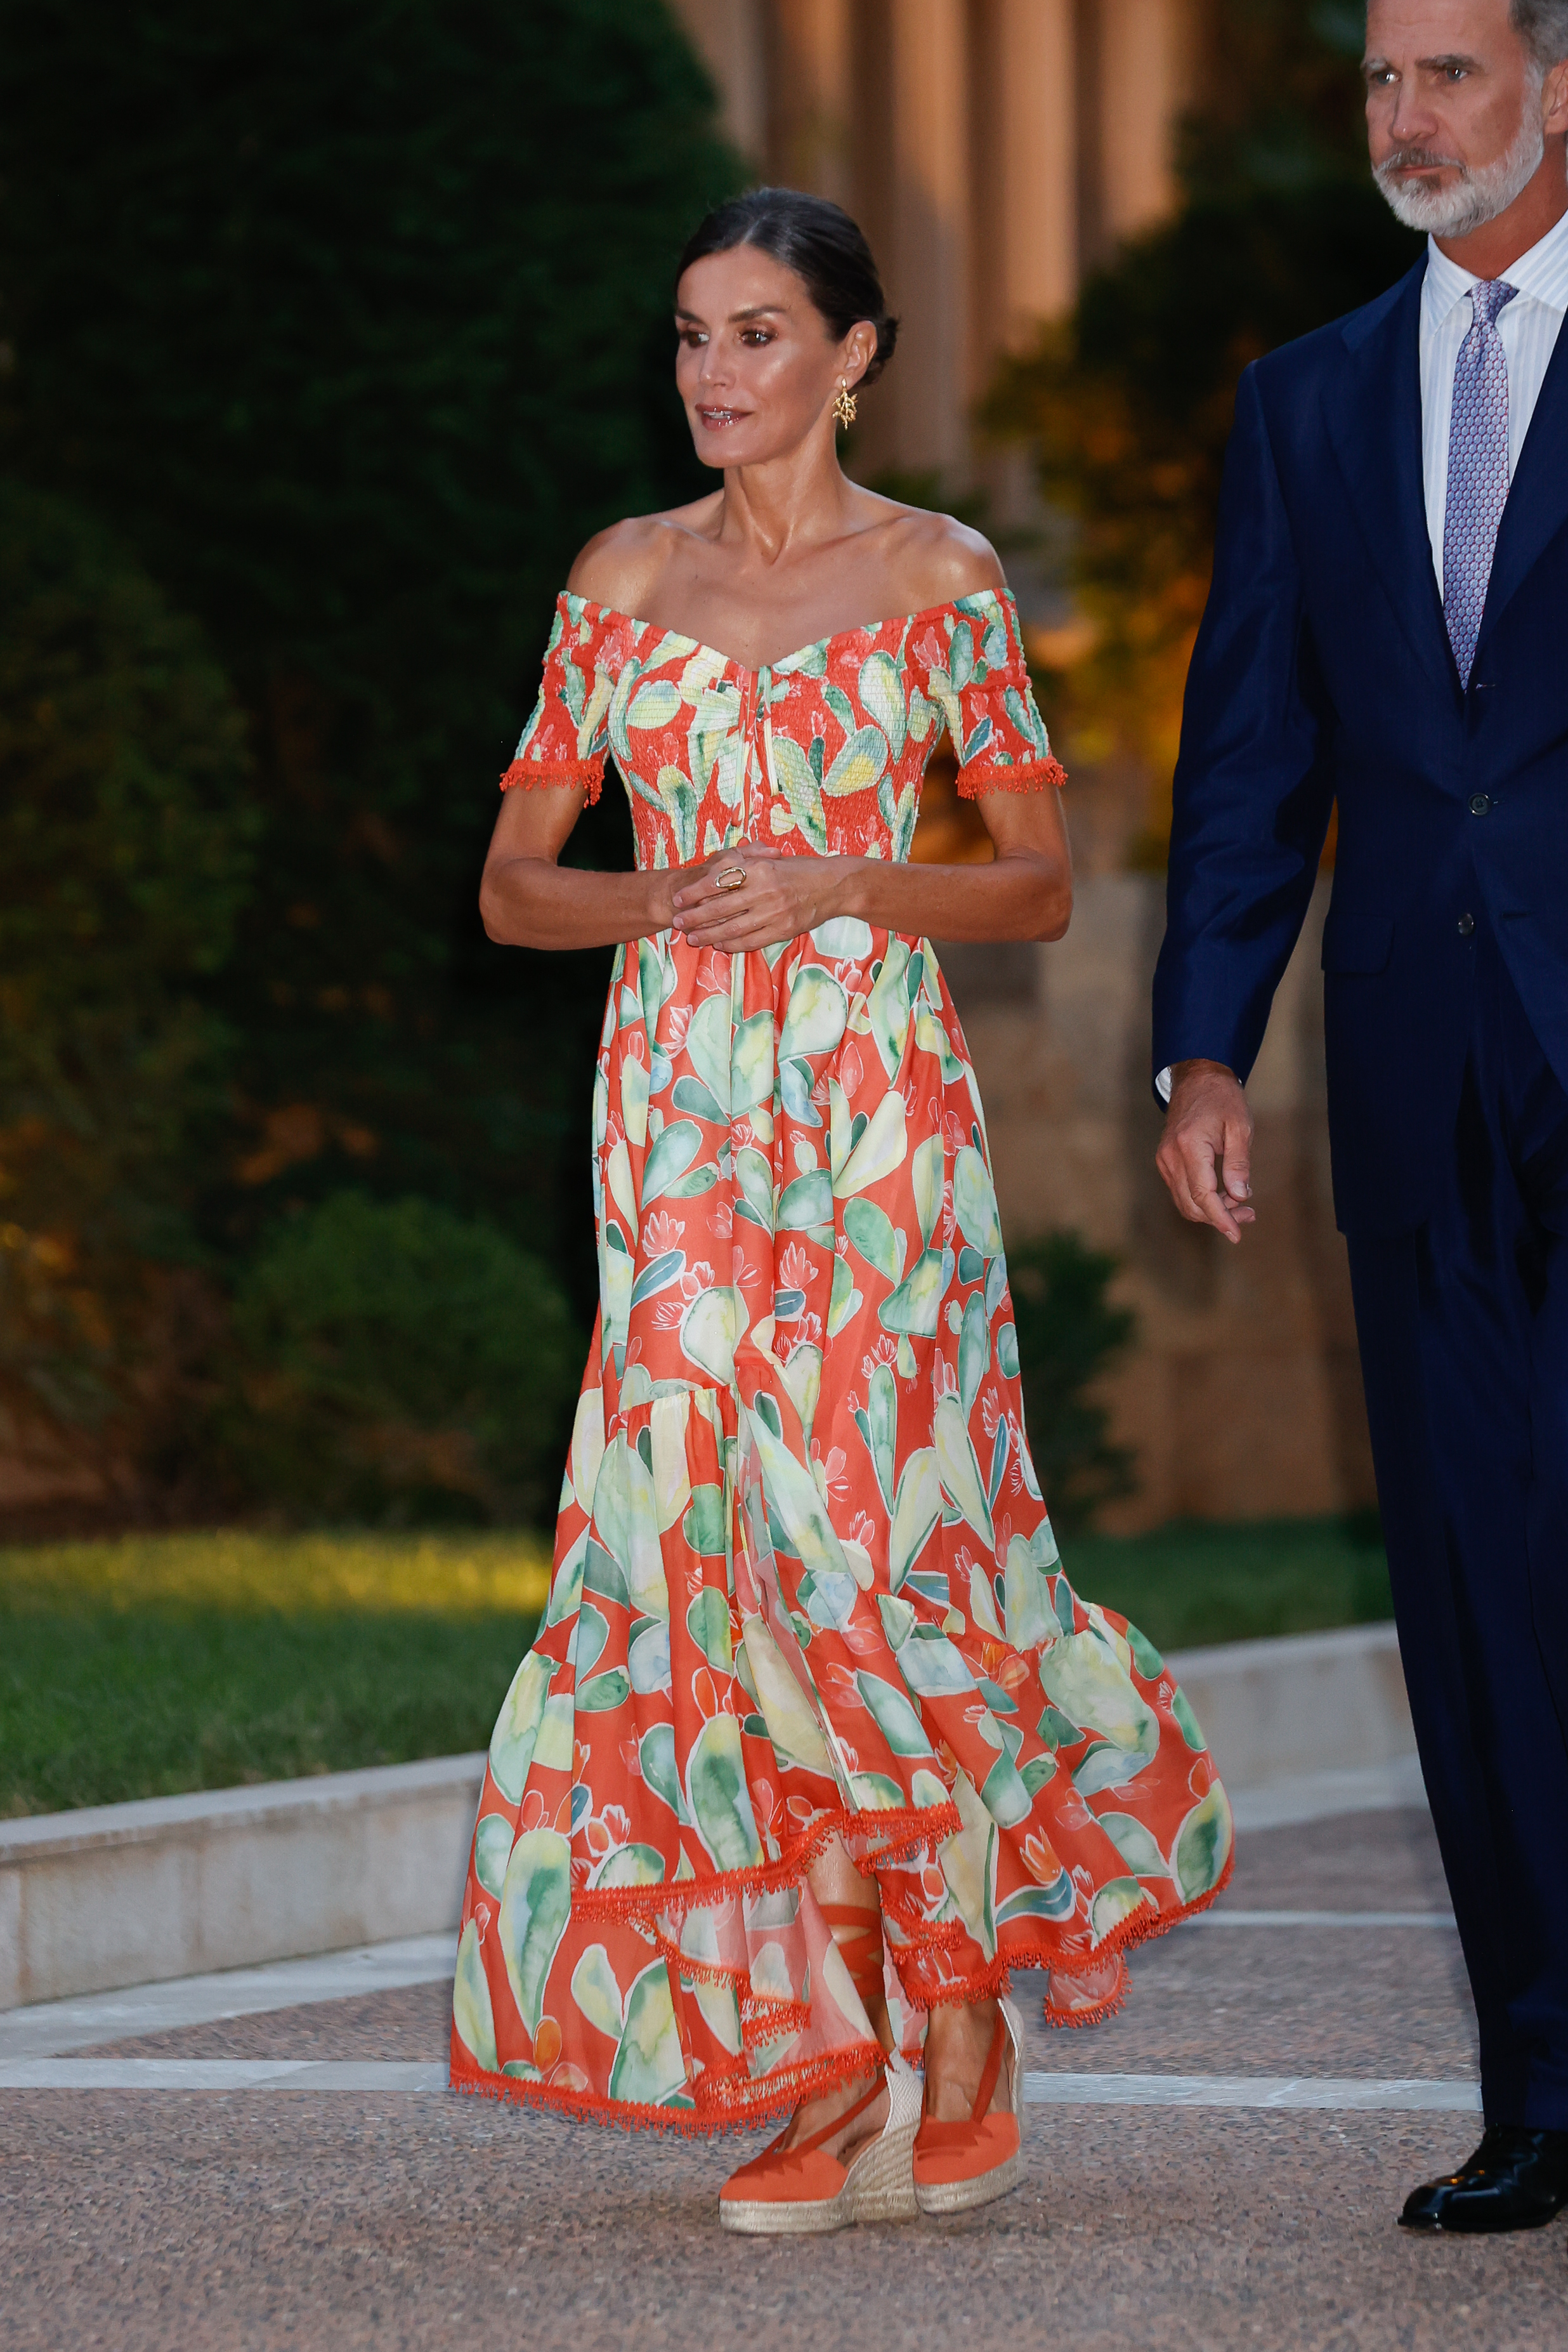 La Reina Letizia apuesta todo al naranja en Marivent, alpargatas incluidas, con un vestido de aires folk